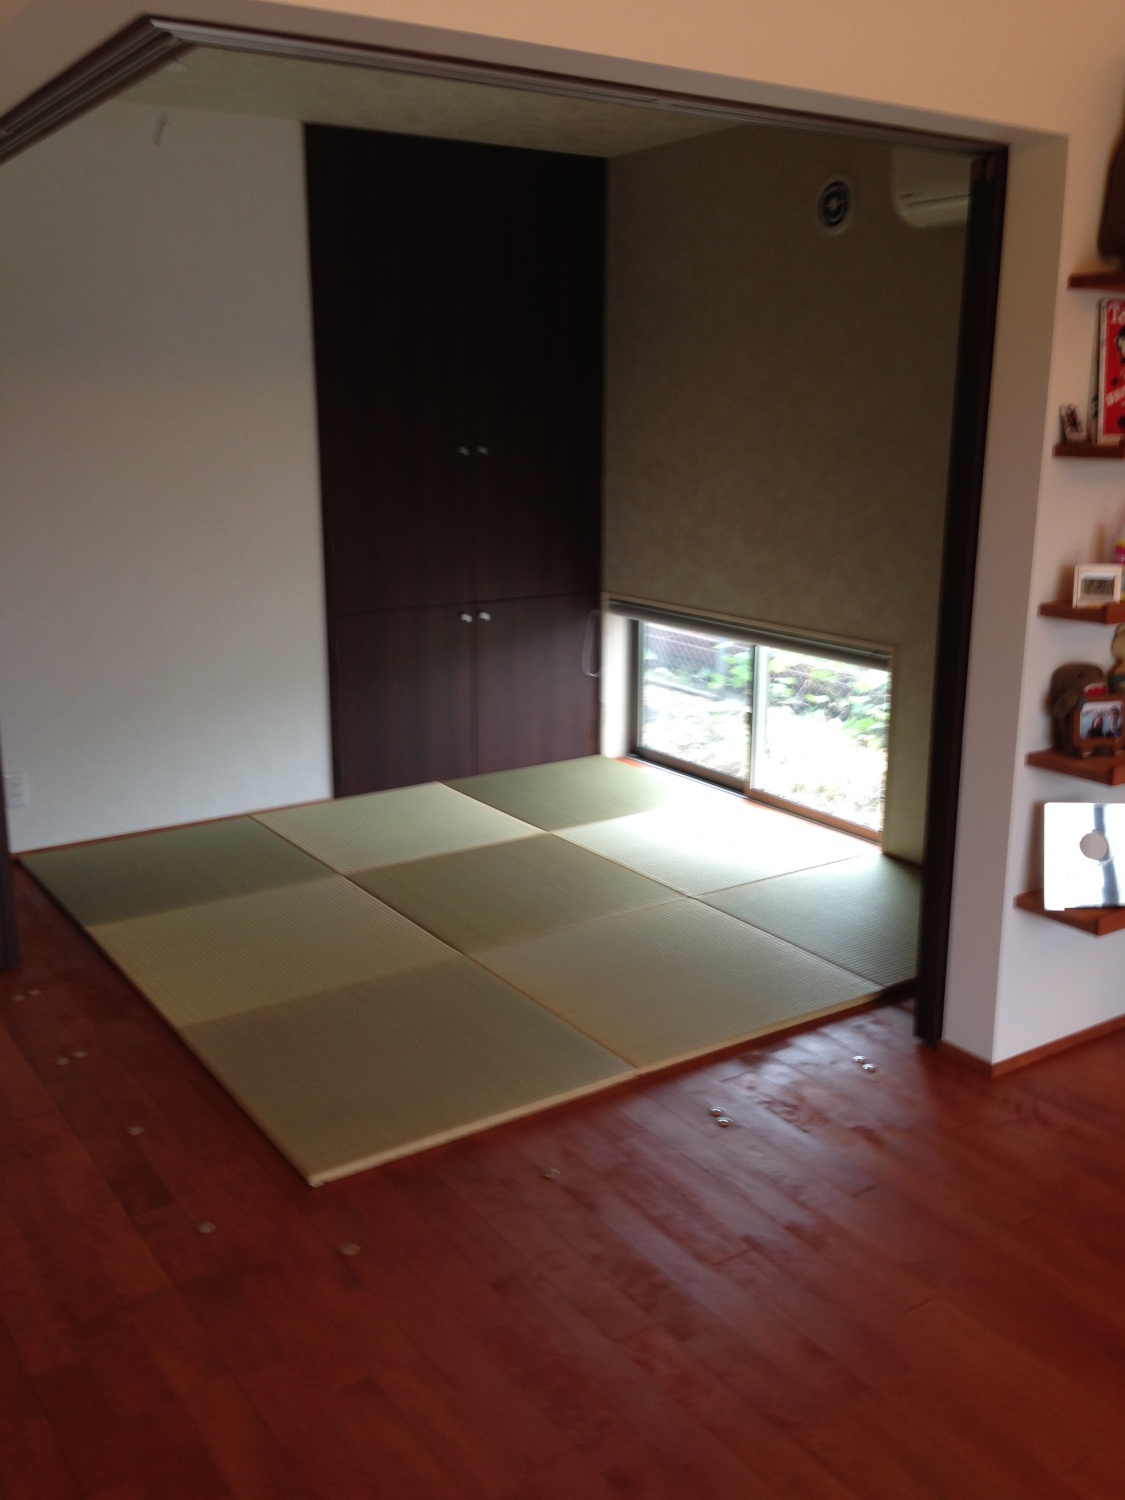 新築のお家に 置き畳を納品 一畳屋 ブログ 熊本で畳のことなら一畳屋